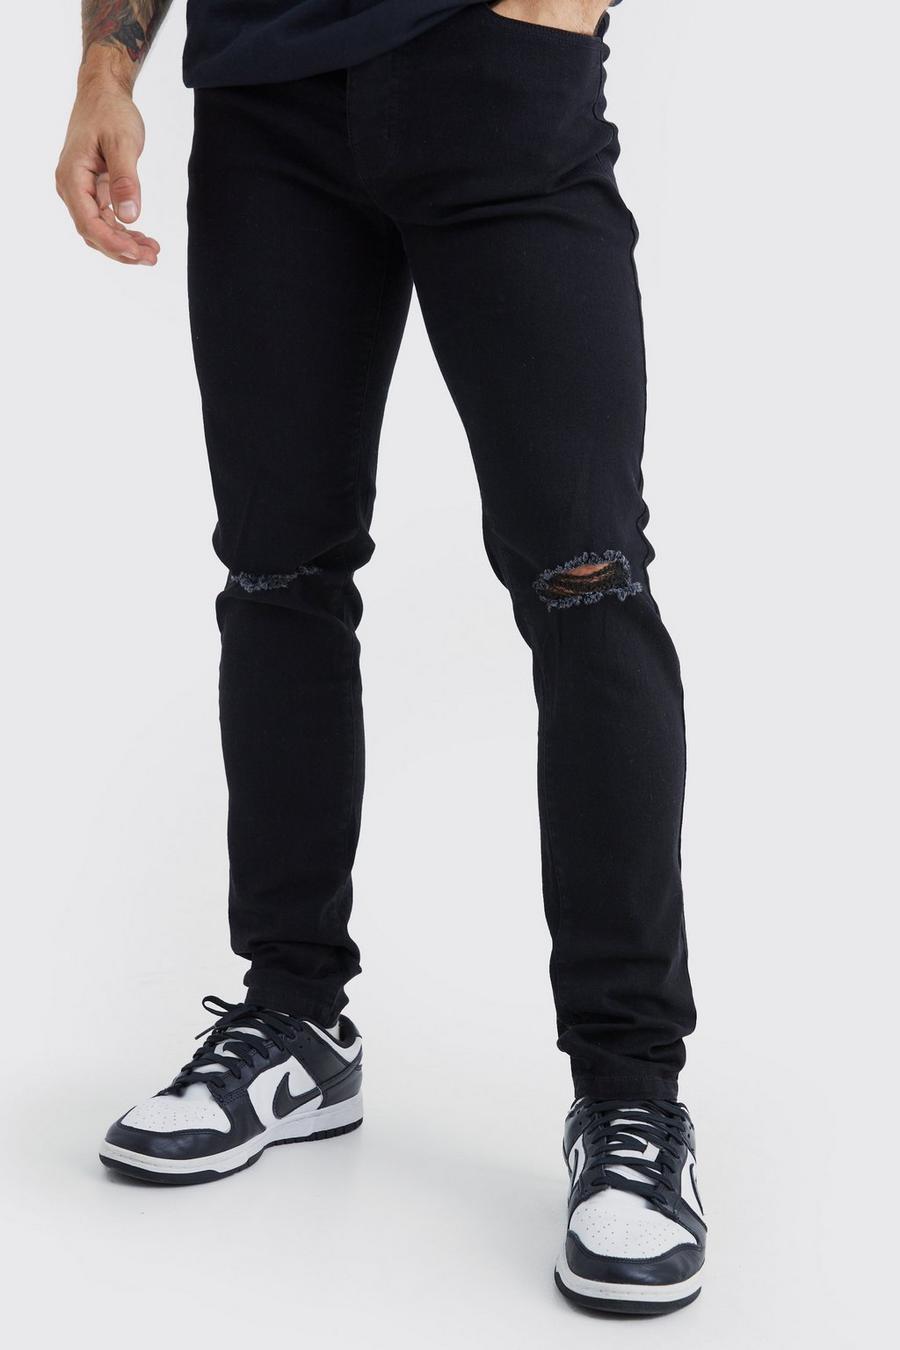 Jeans Skinny Fit con taglio sul ginocchio, True black